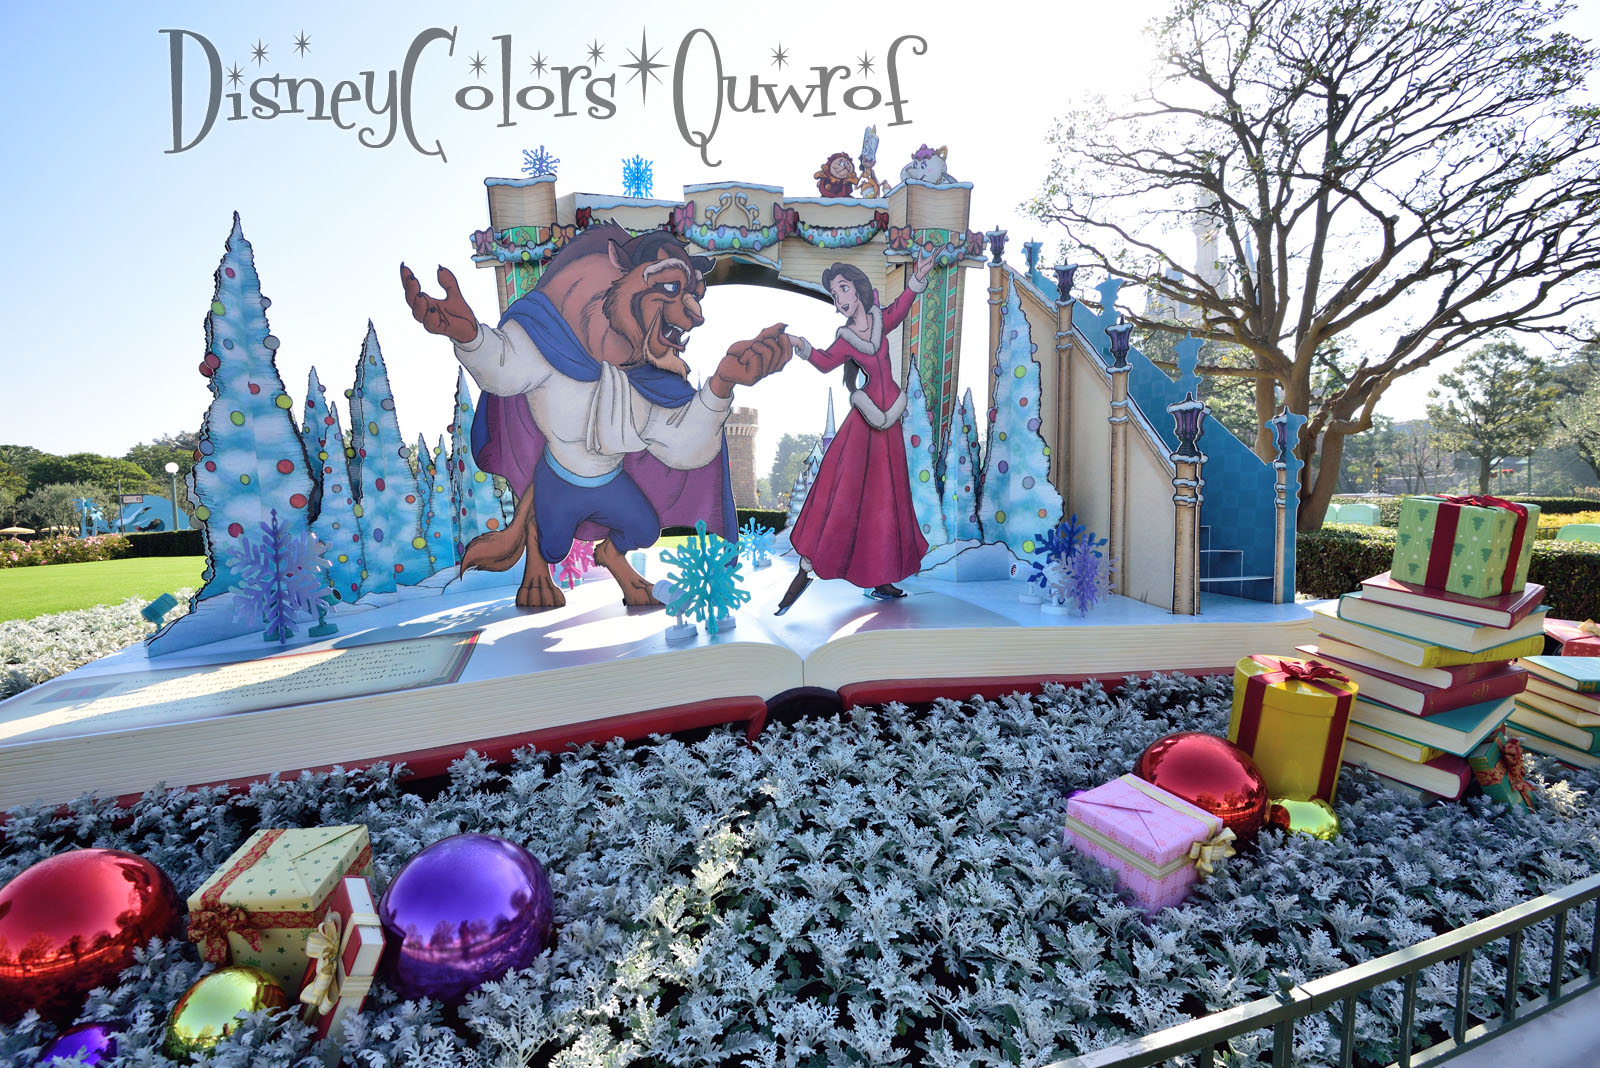 ディズニーランド クリスマス ファンタジー15 デコレーション特集 Disney Colors Blog